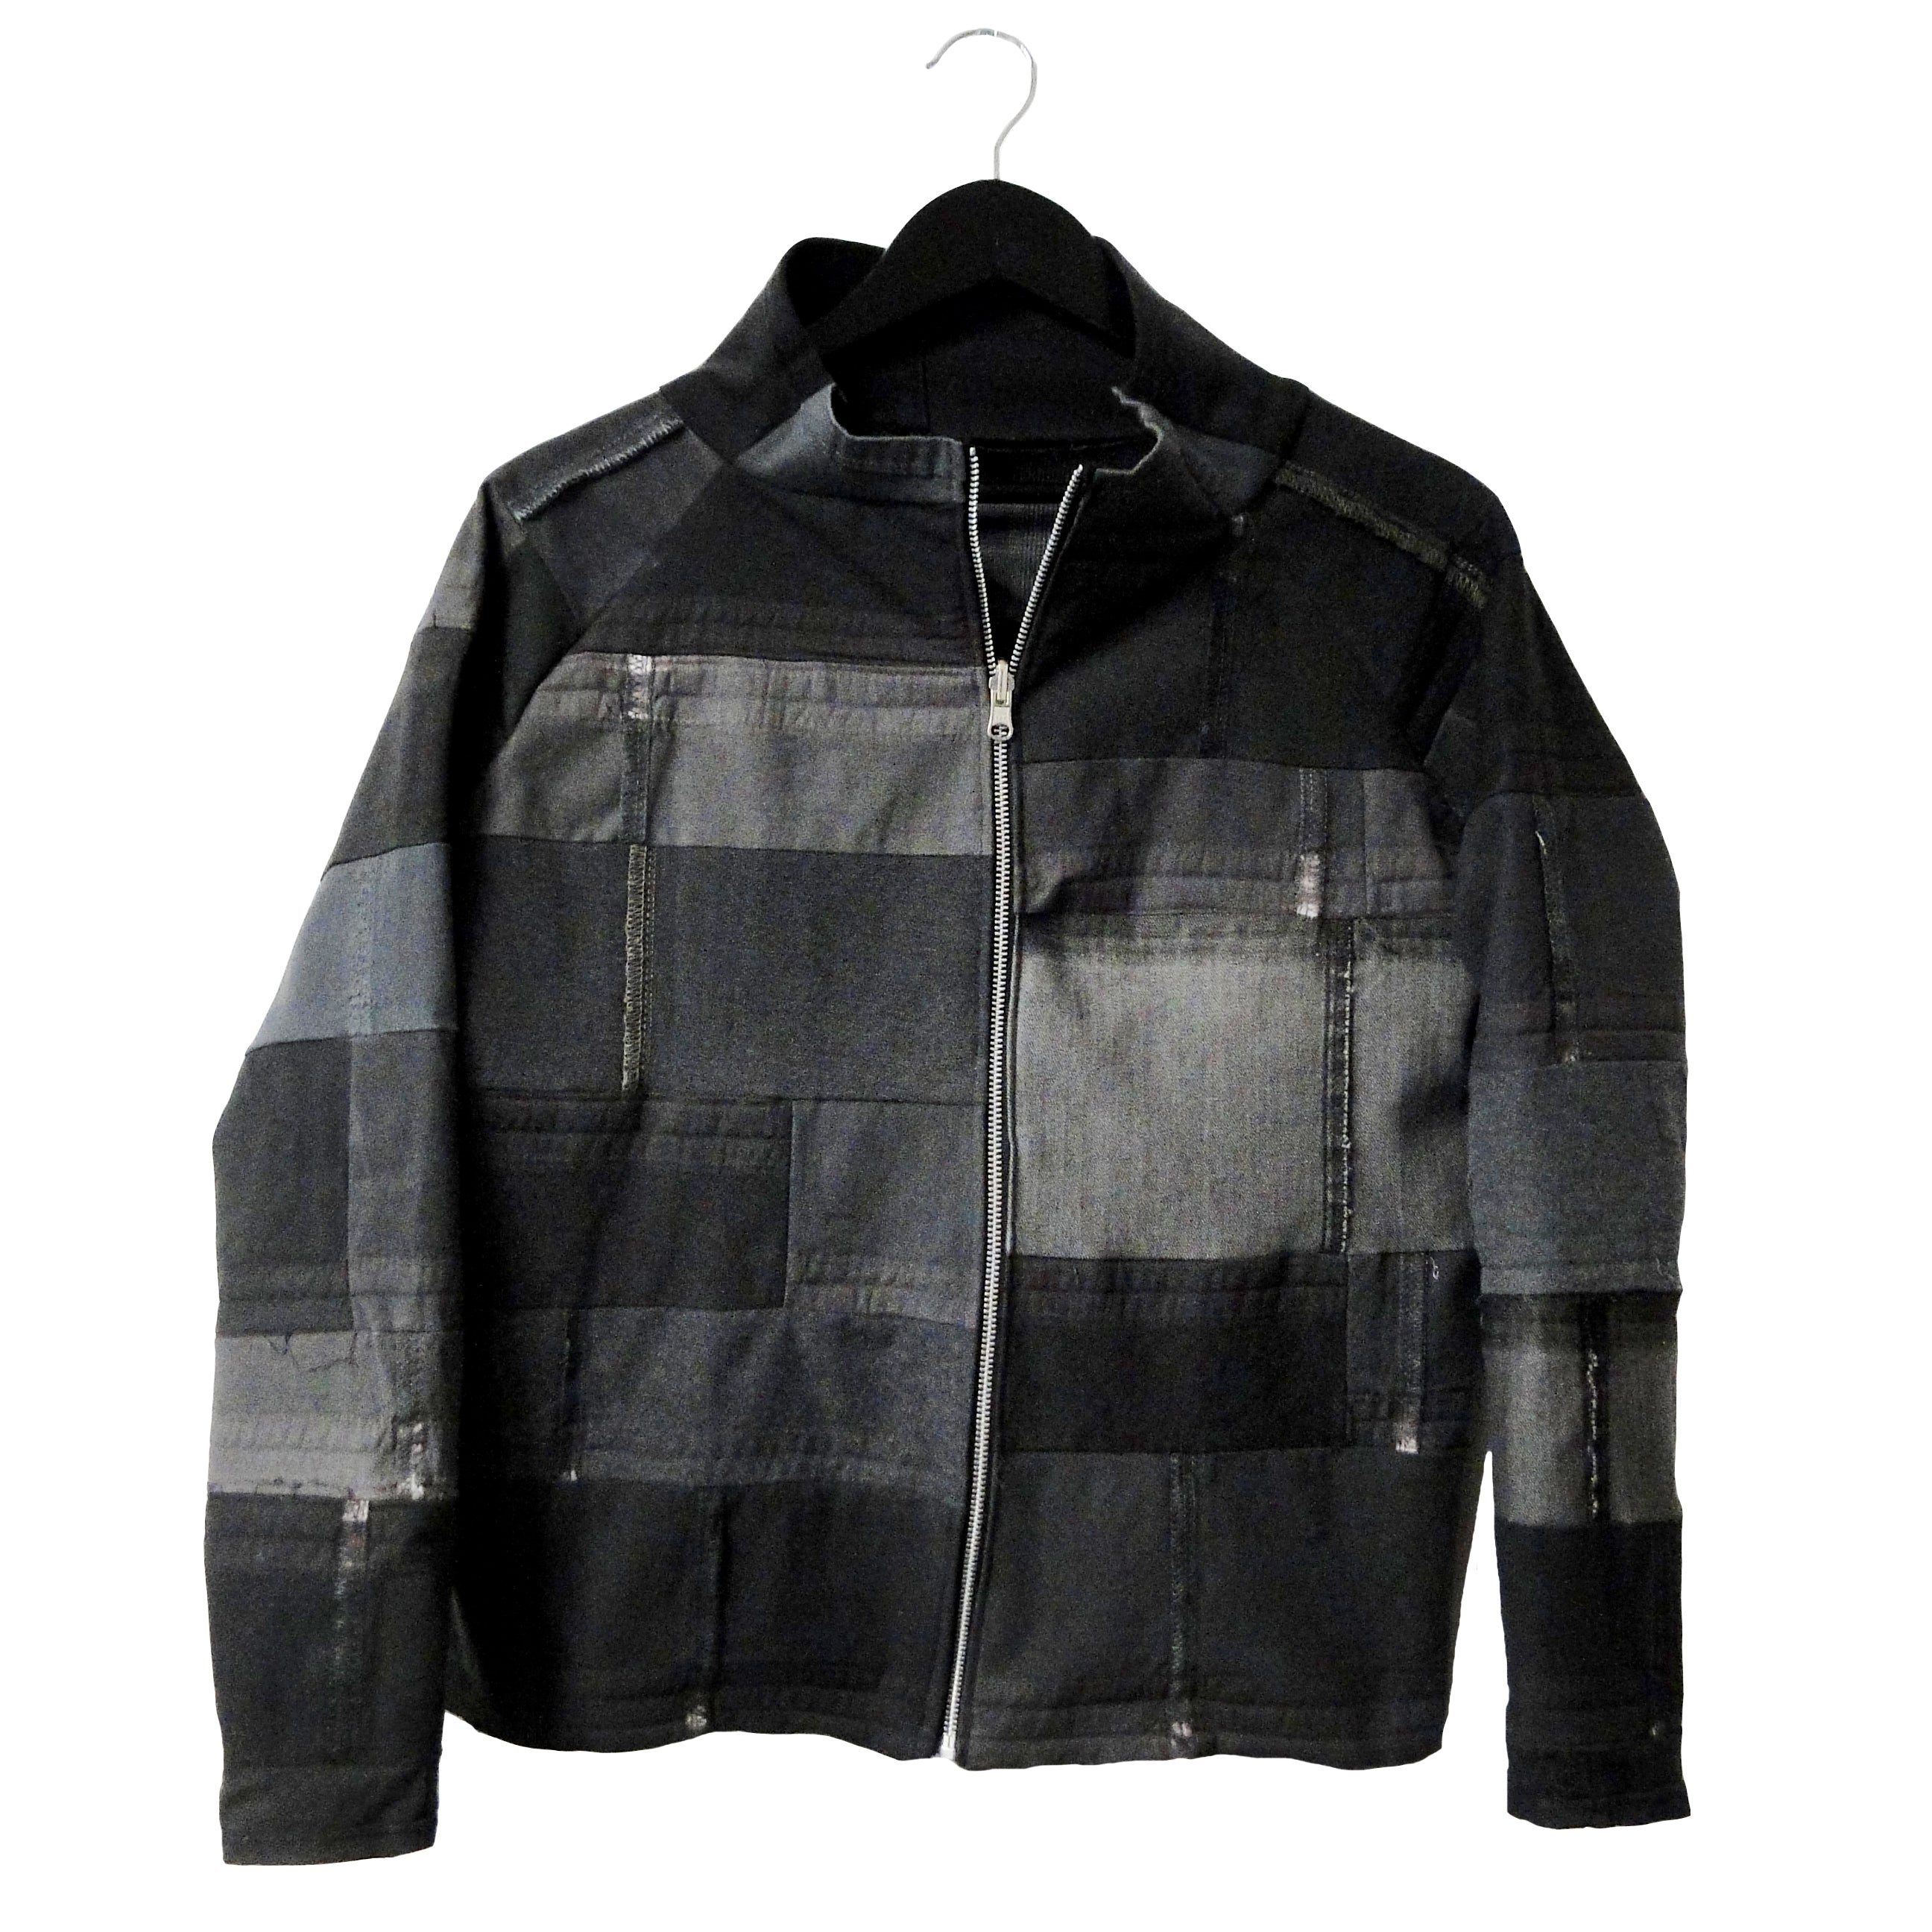 upcycled, reversible, sustainable denim jacket